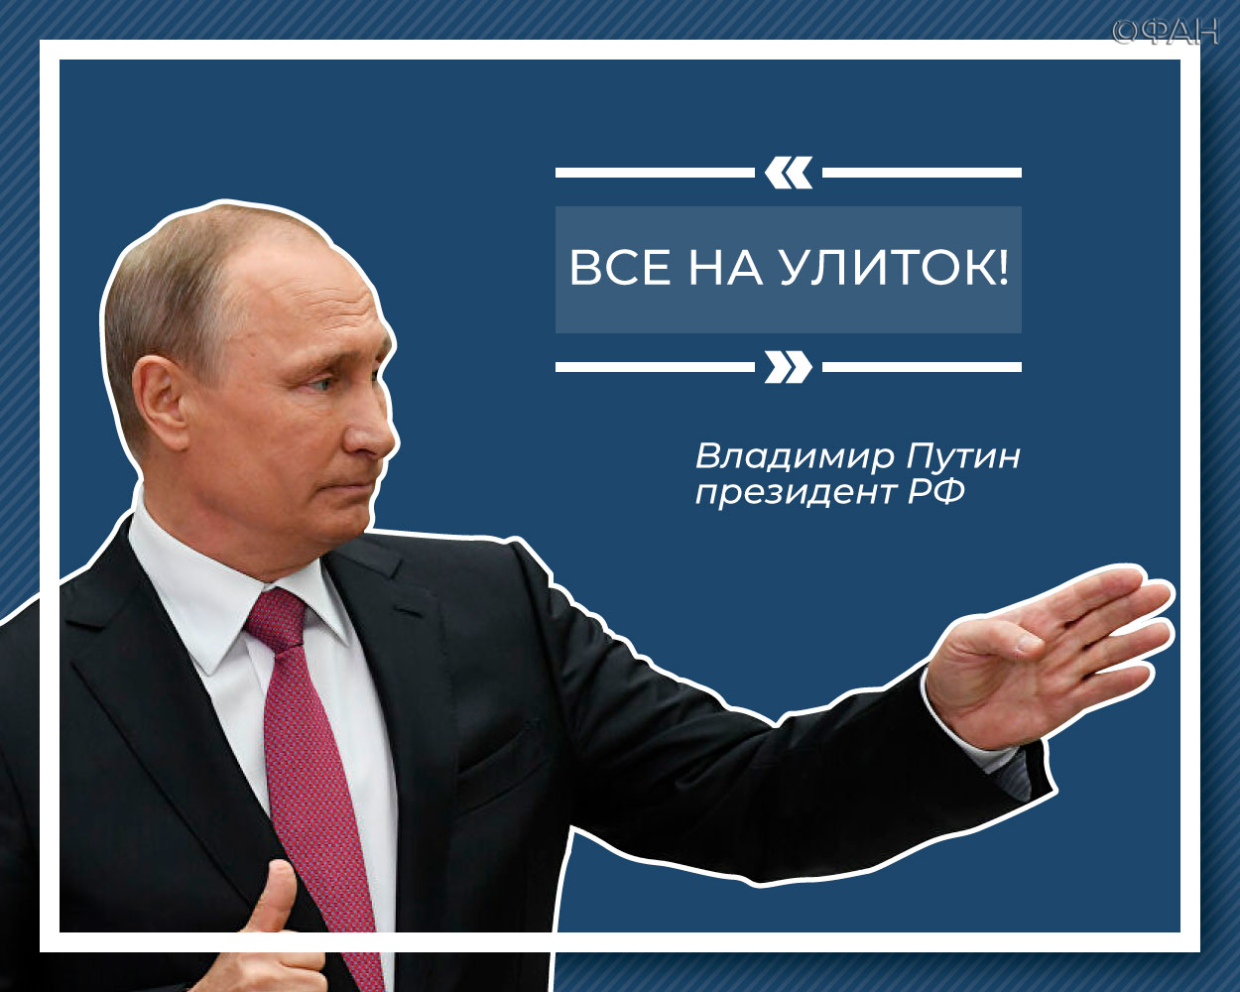 Десять ярких цитат Владимира Путина